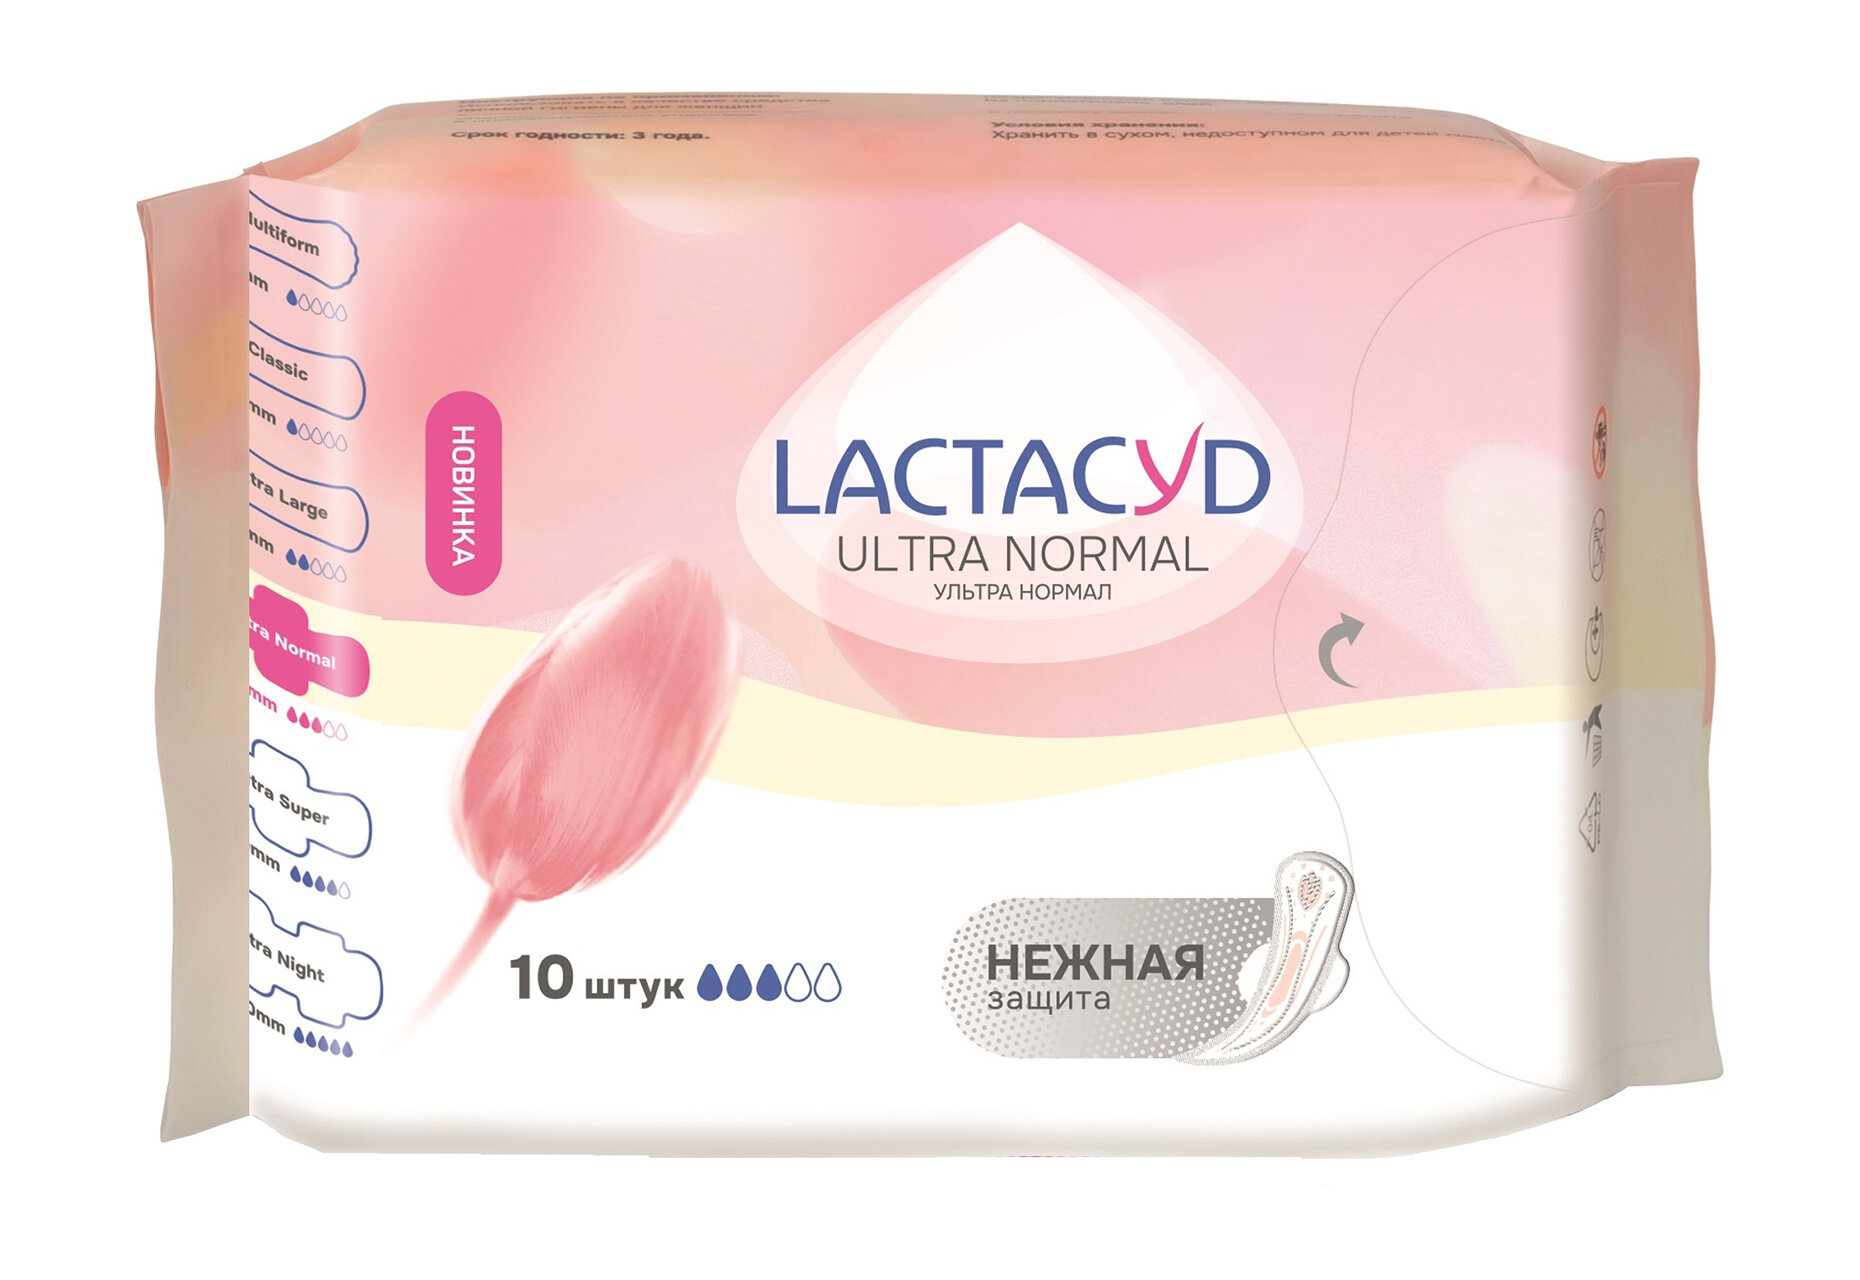 LACTACYD Прокладки впитывающие для использования в критические дни серии LACTACYD: Ultra Normal жен, 10 шт.